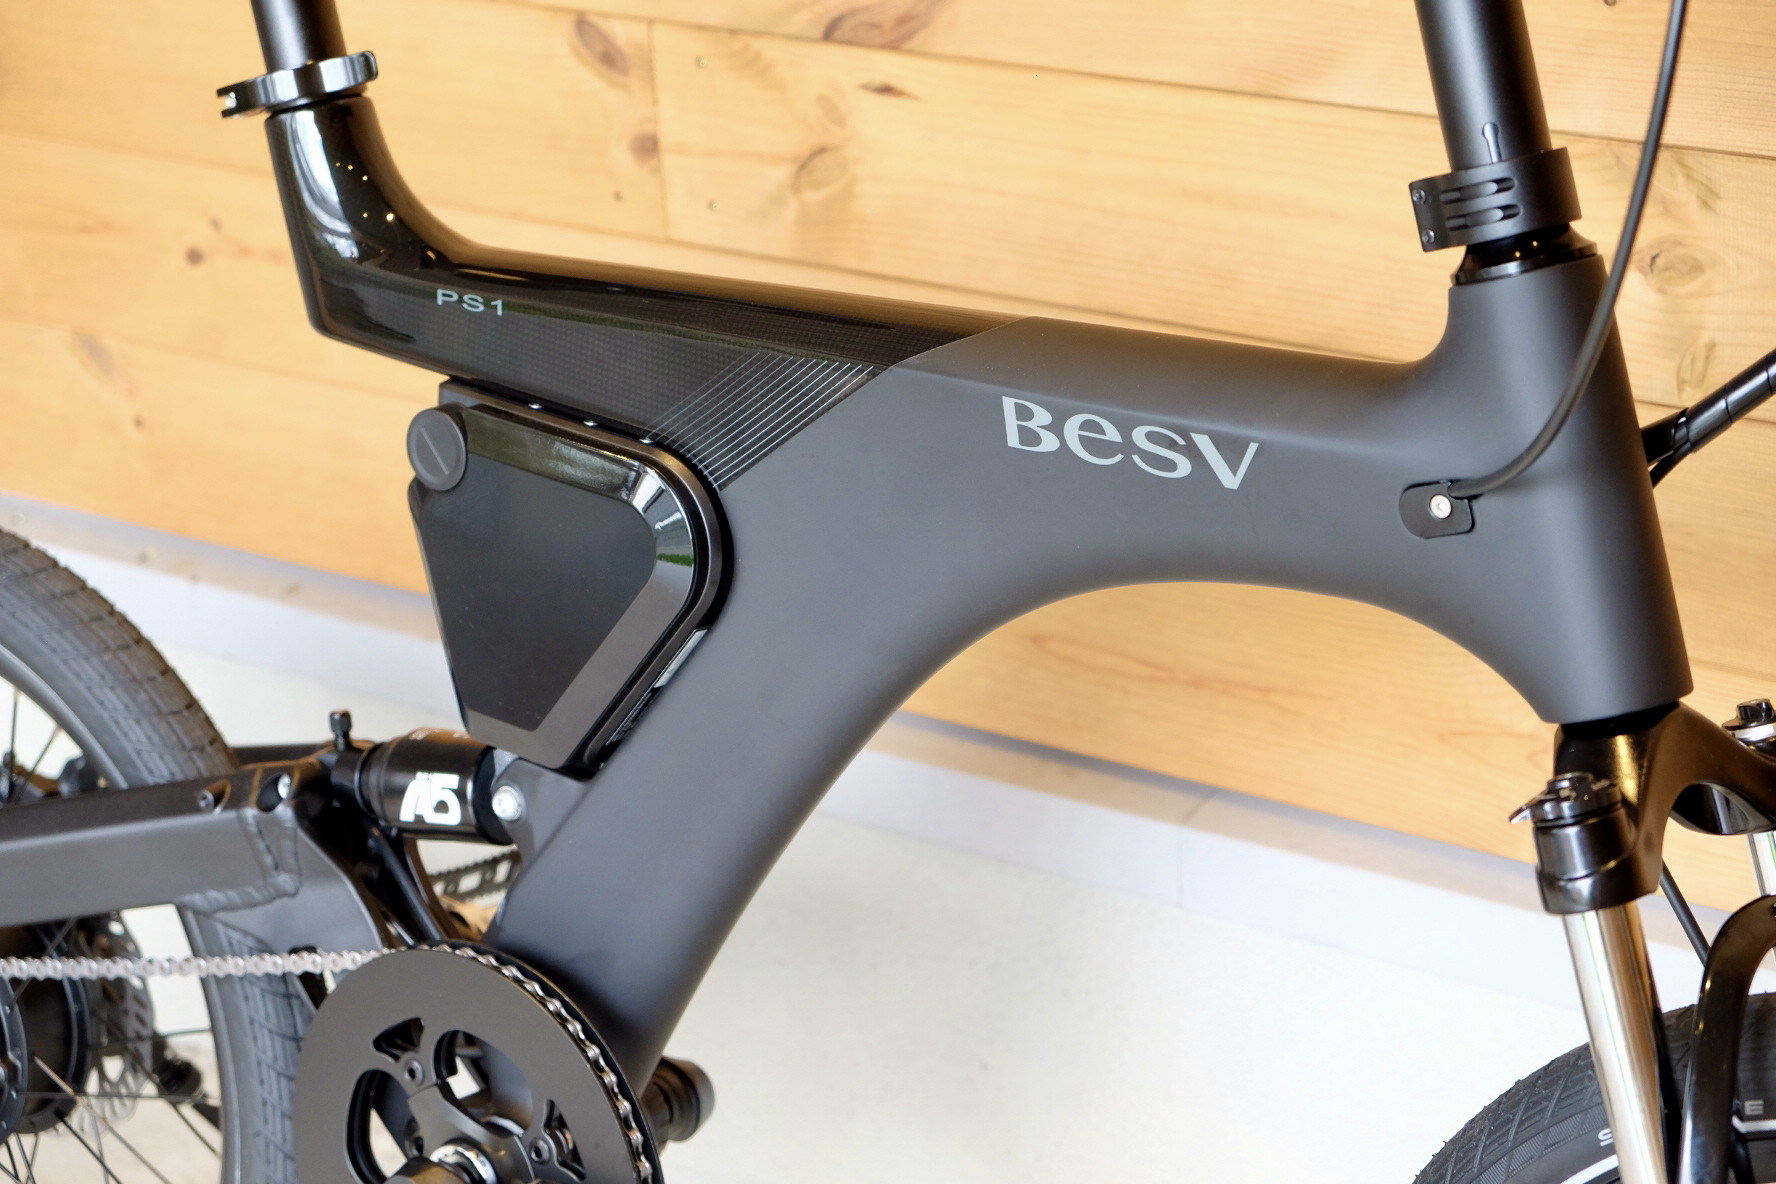 E-bike専門メーカー「BESV(ベスビー)」の試乗車を常設しています。PS1